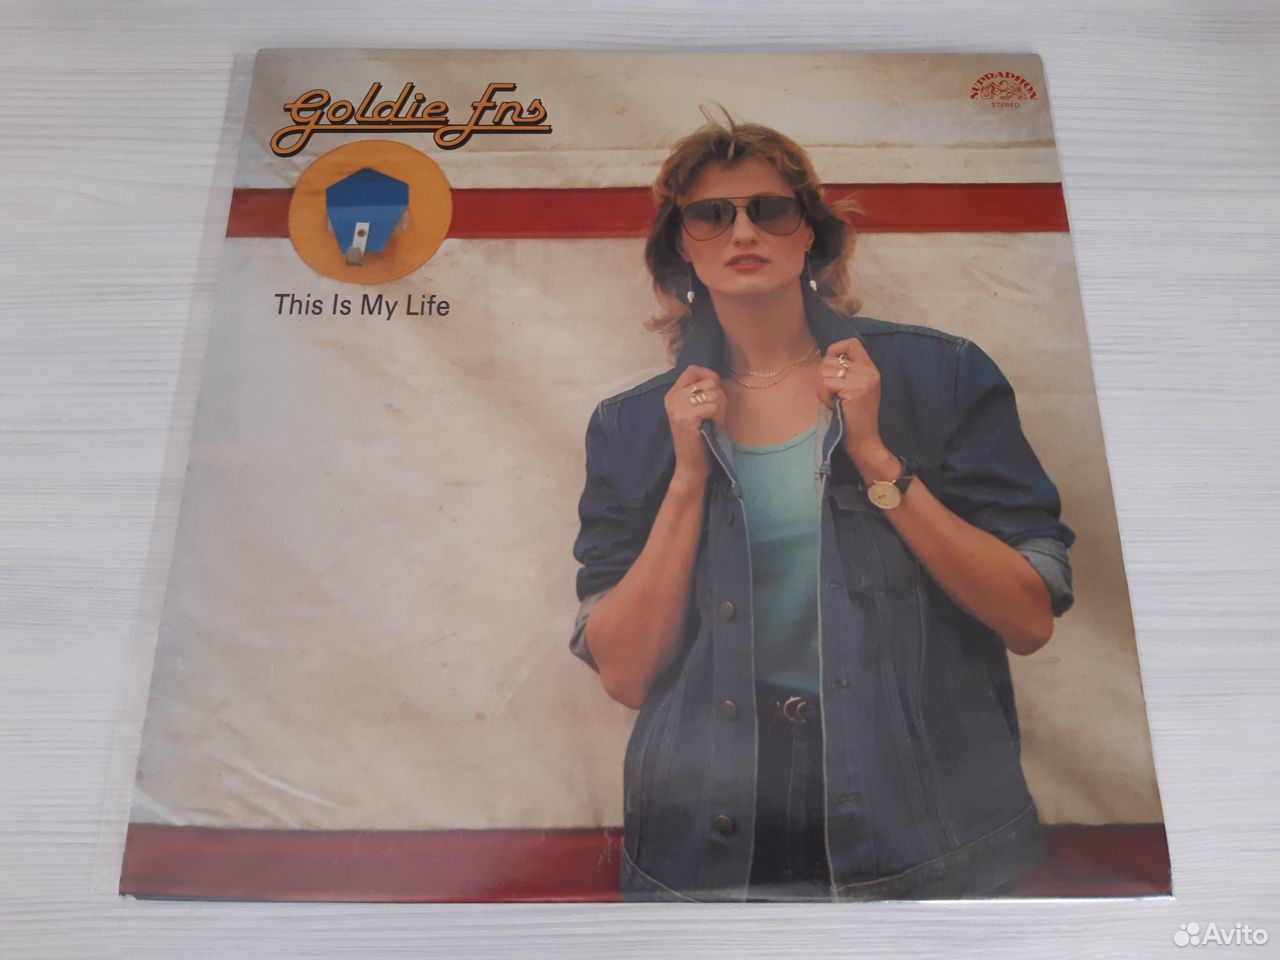 Goldie Ens - This Is My Life (1983) 89058588885 купить 1